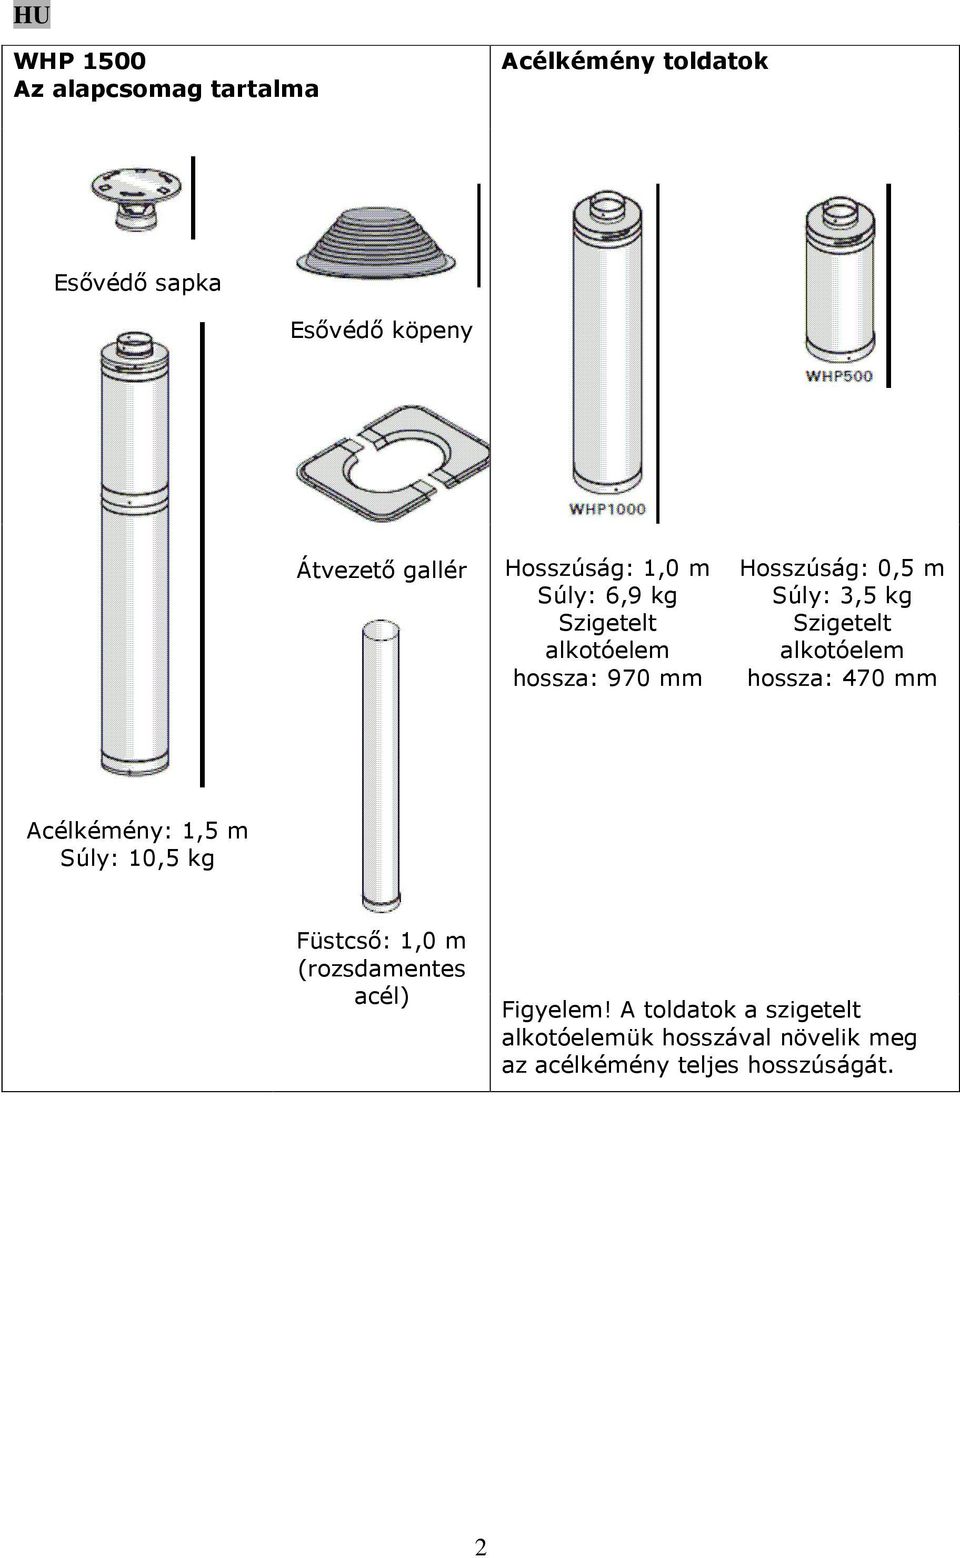 Szigetelt alkotóelem hossza: 470 mm Acélkémény: 1,5 m Súly: 10,5 kg Füstcső: 1,0 m (rozsdamentes